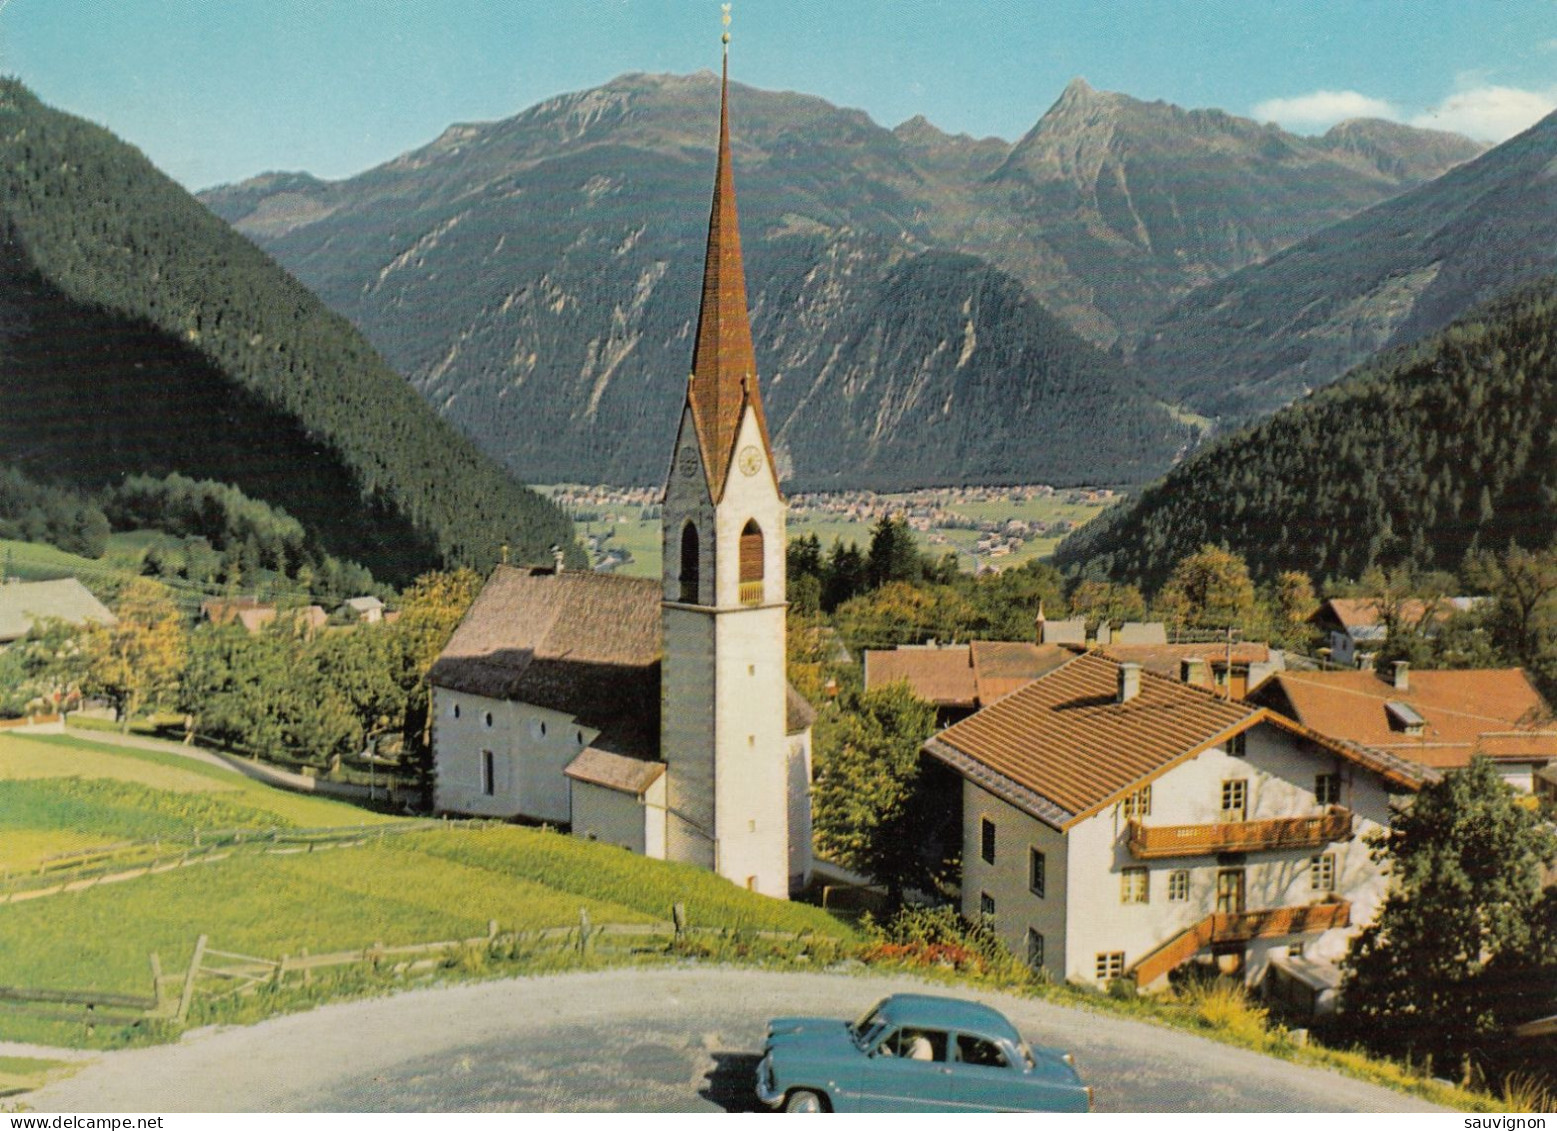 FINKENBERG. Im Zillertal. Straßenkehre Mit Blauen Oldtimer, Um 1960 - Zillertal